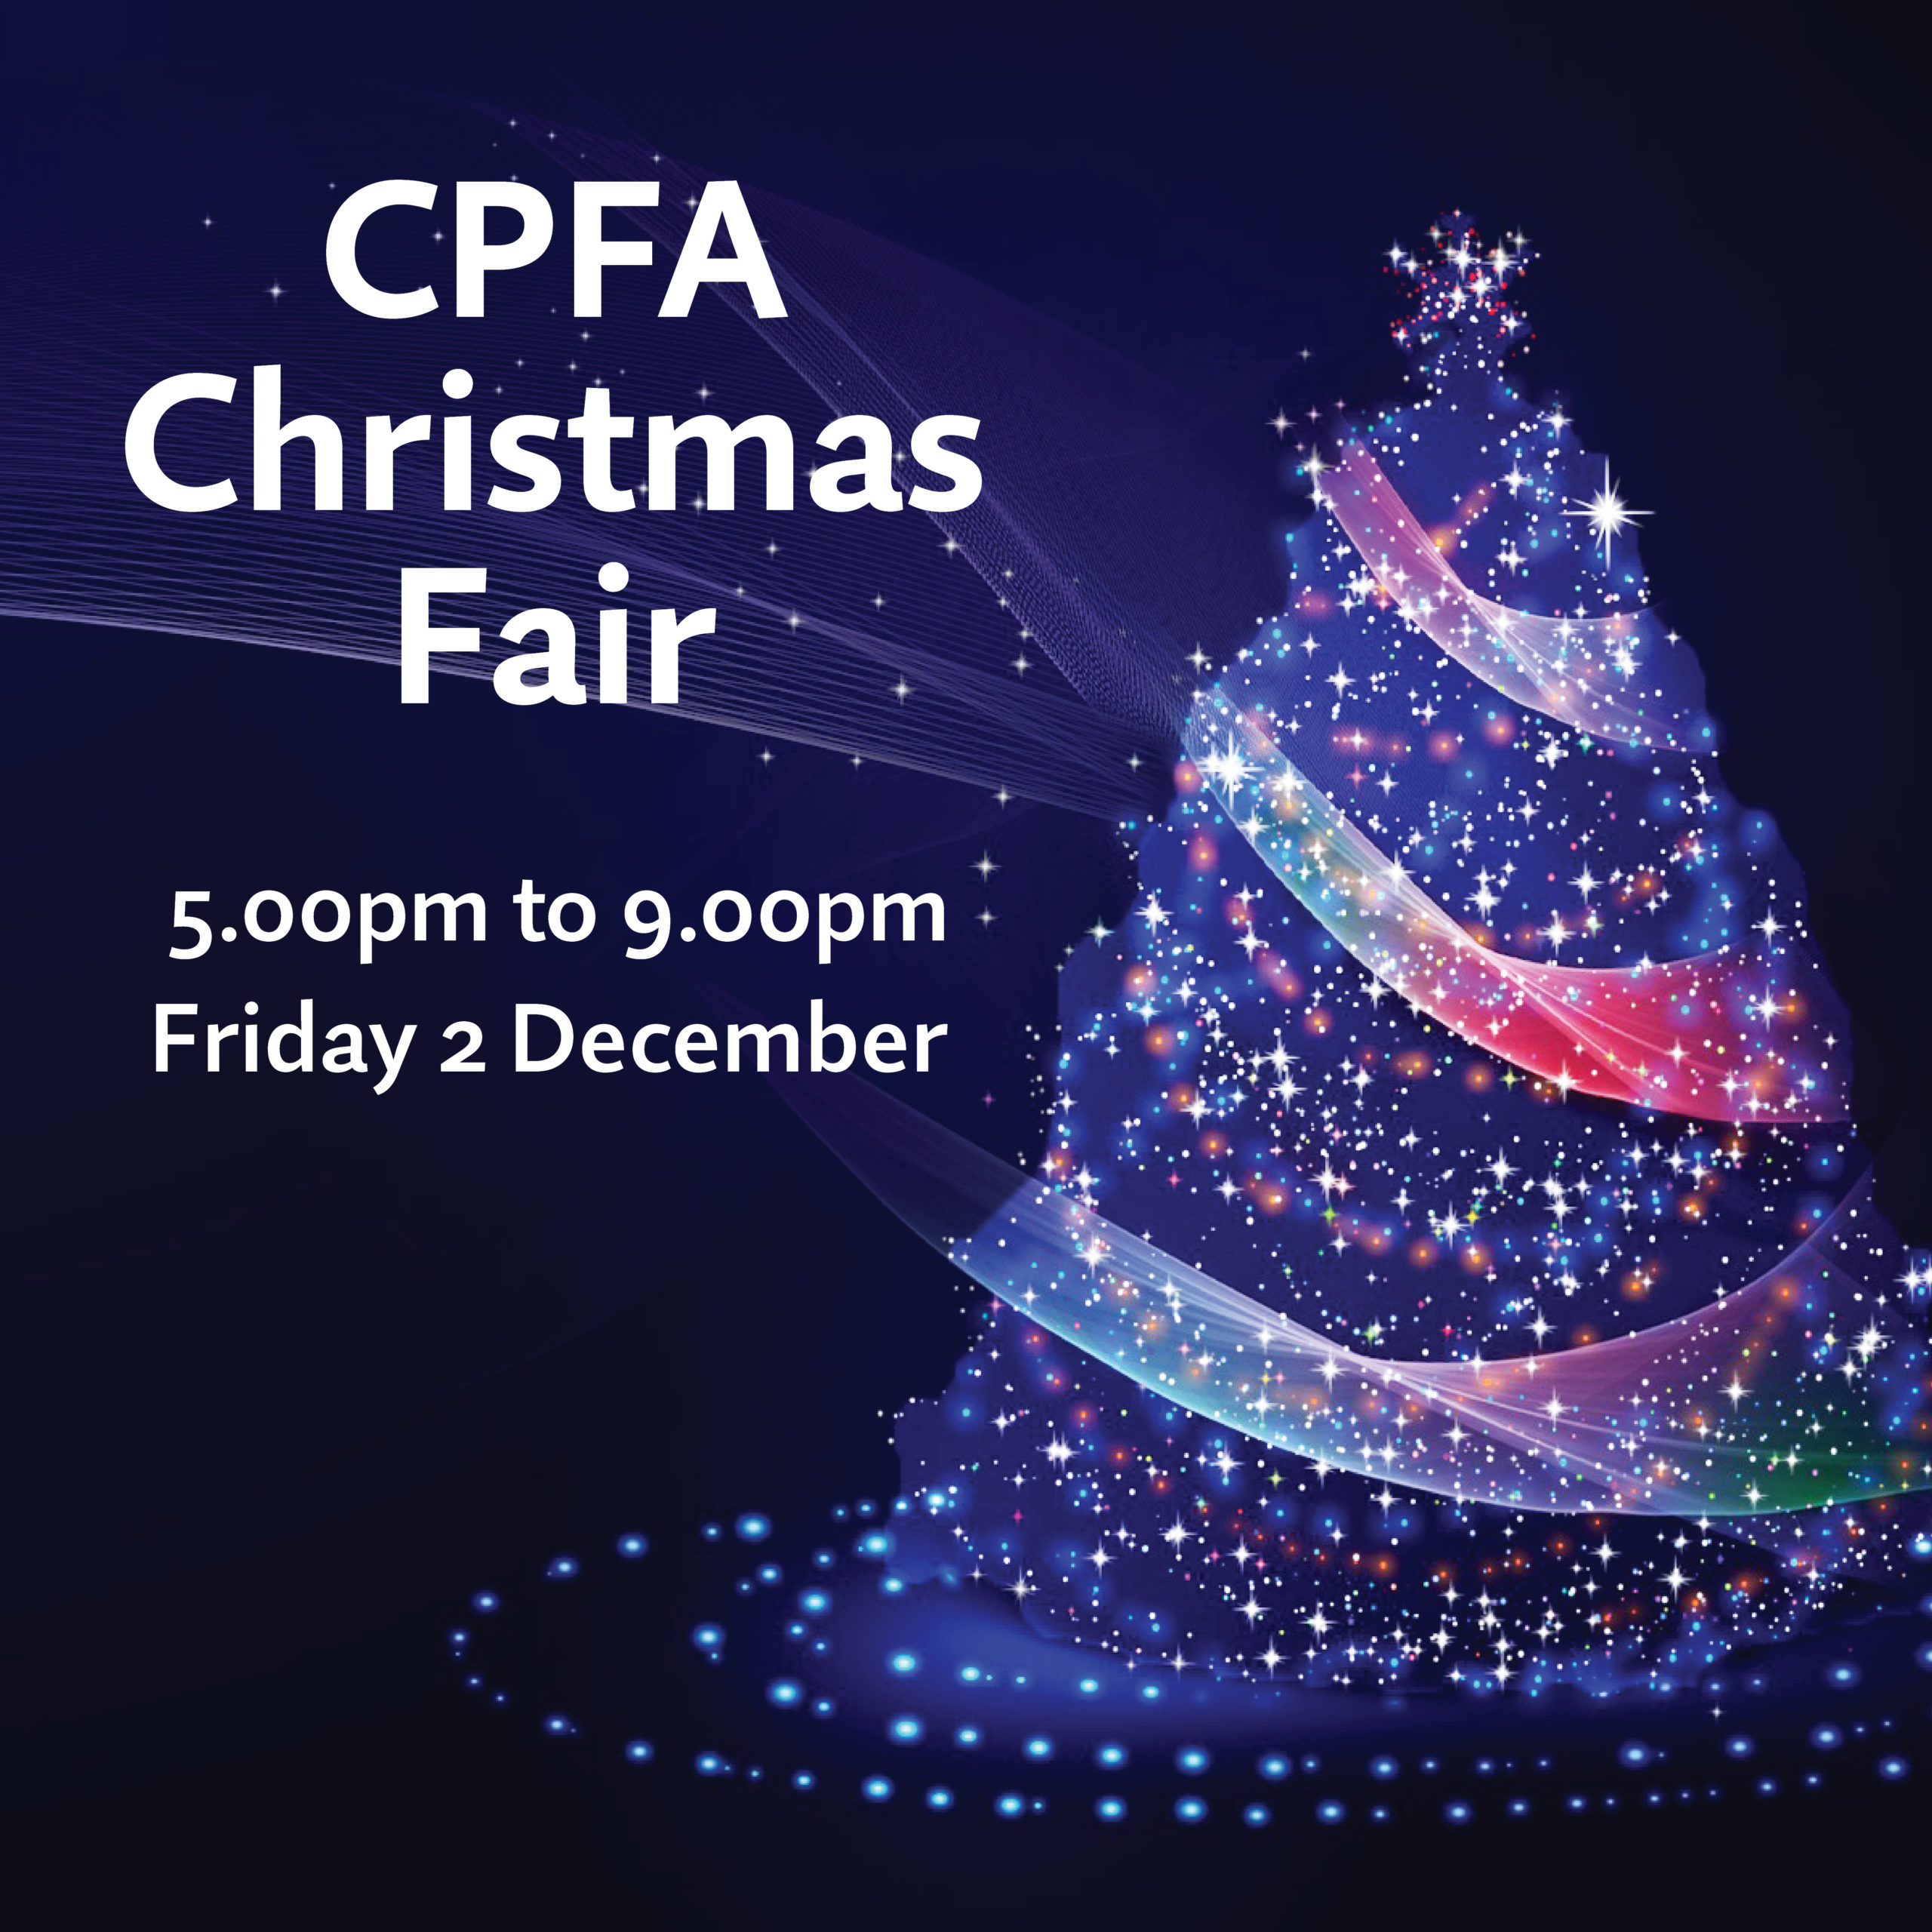 CPFA Christmas Fair